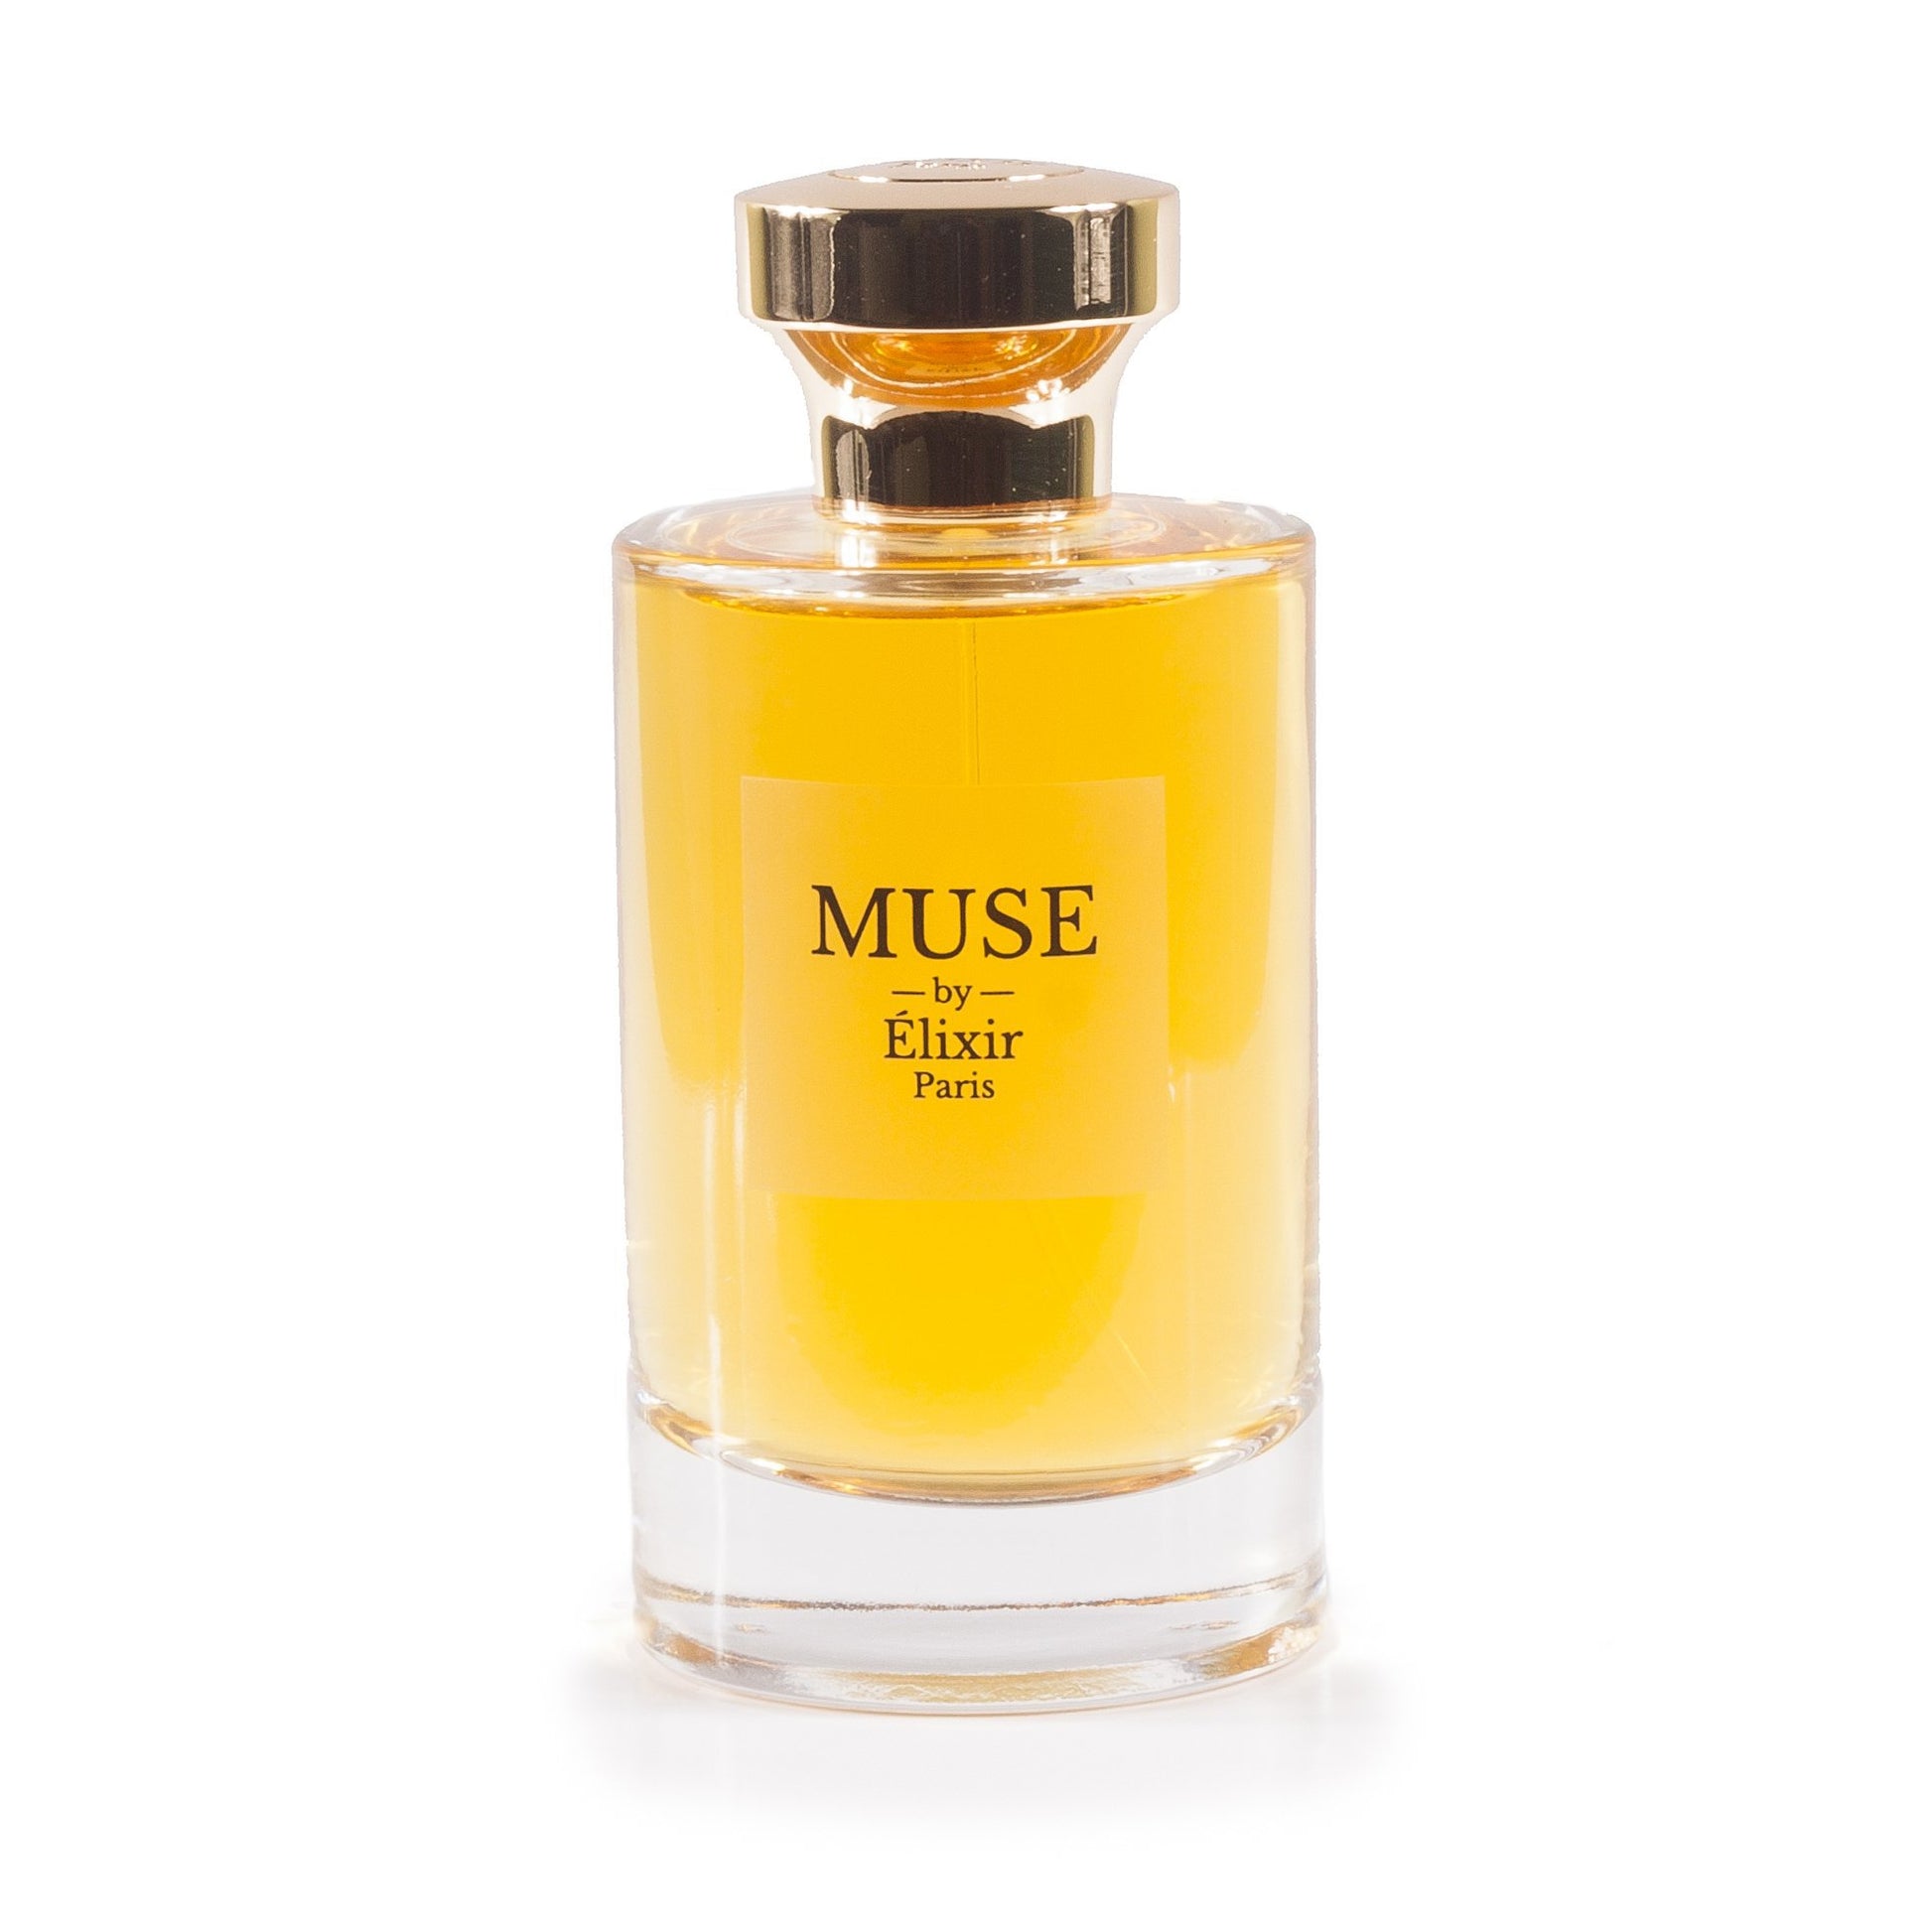 Muse Eau de Parfum Spray for Women by Elixir Paris, Product image 2